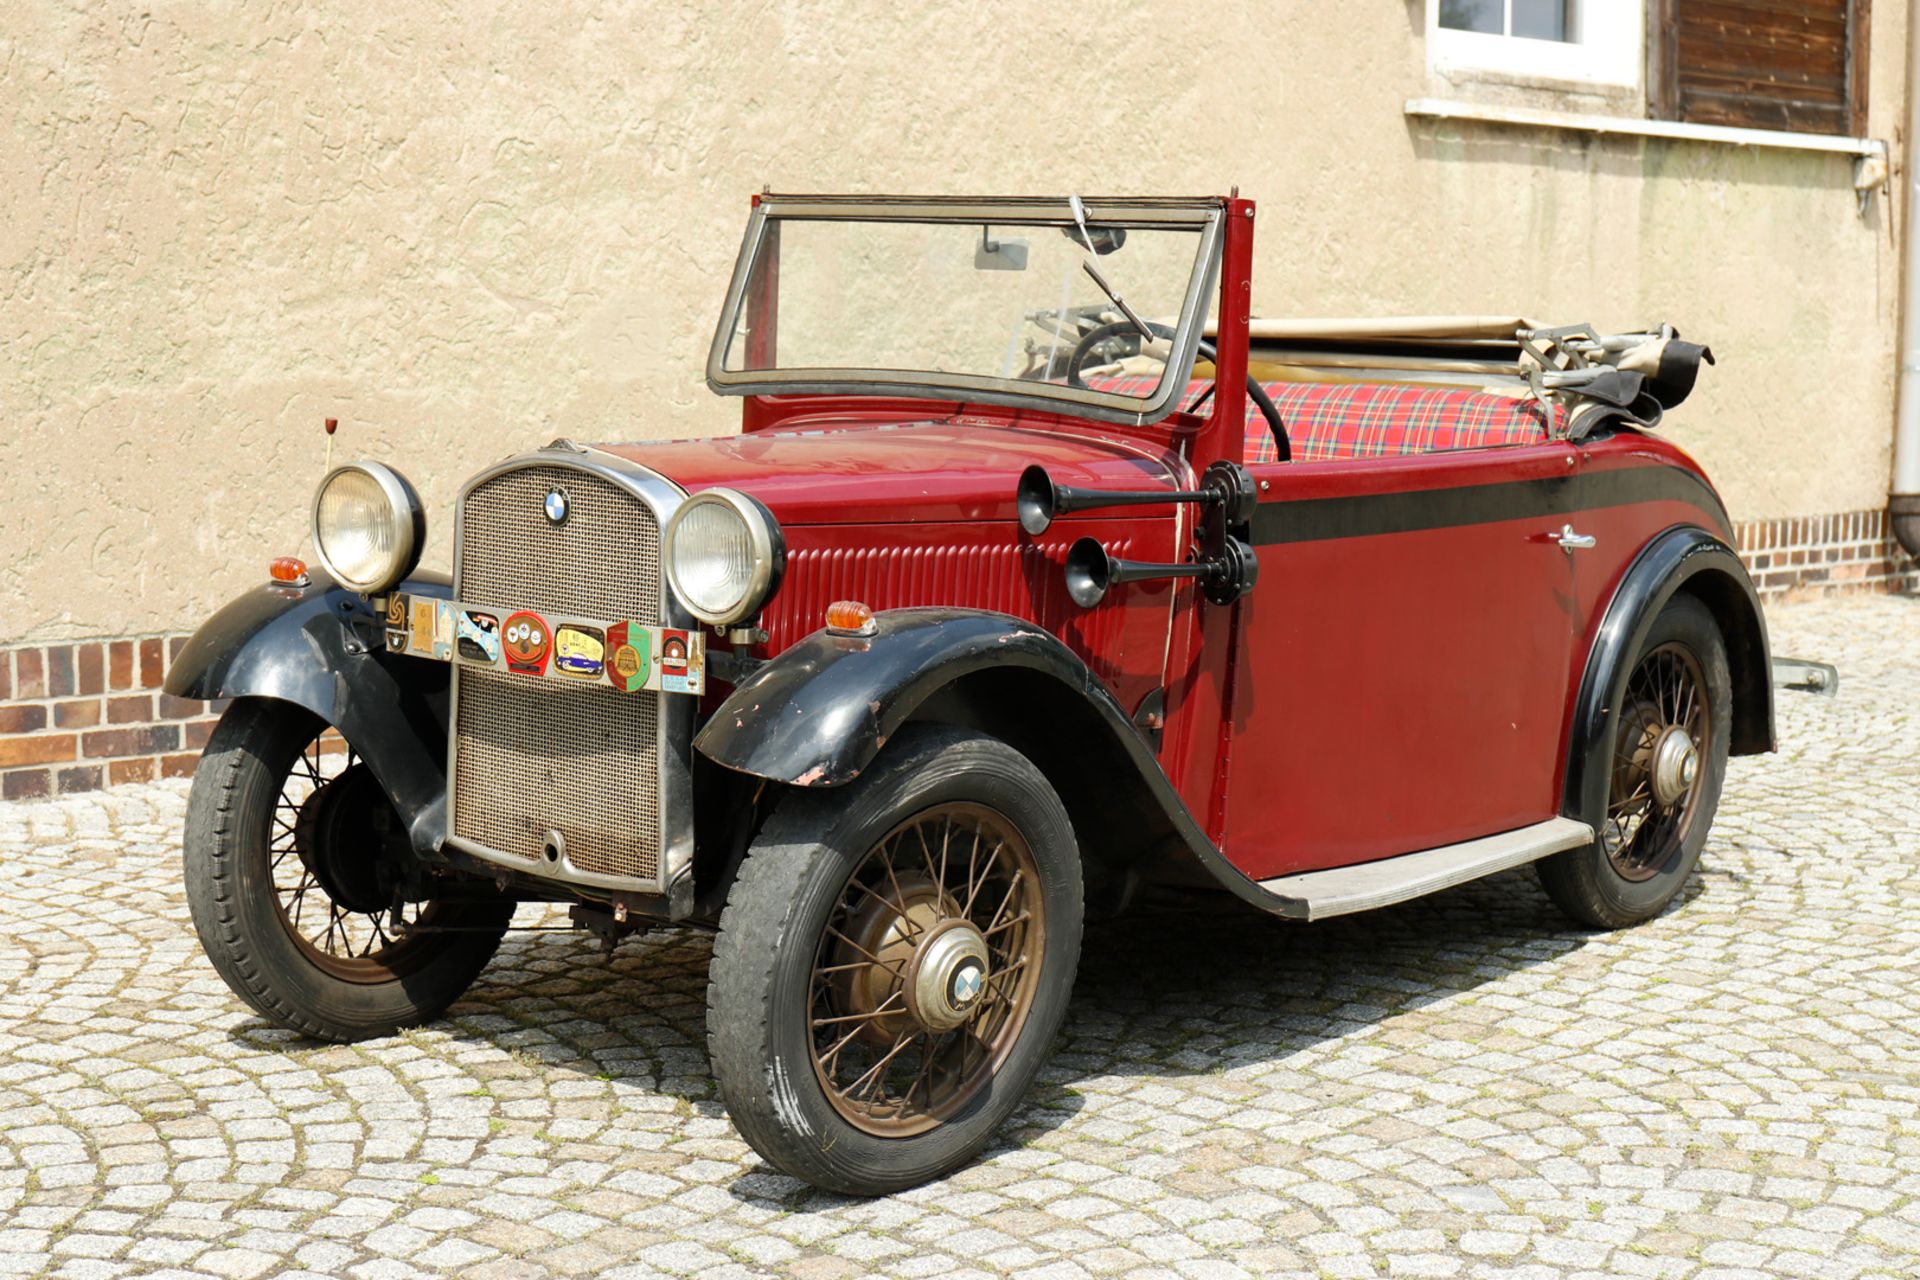 Oldtimer BMW Cabriolet 1933 AM 4 / 33442, ccm 782, PS 20/3500, 4 Zylinder, Stahlkarosserie, gefertig - Bild 2 aus 25